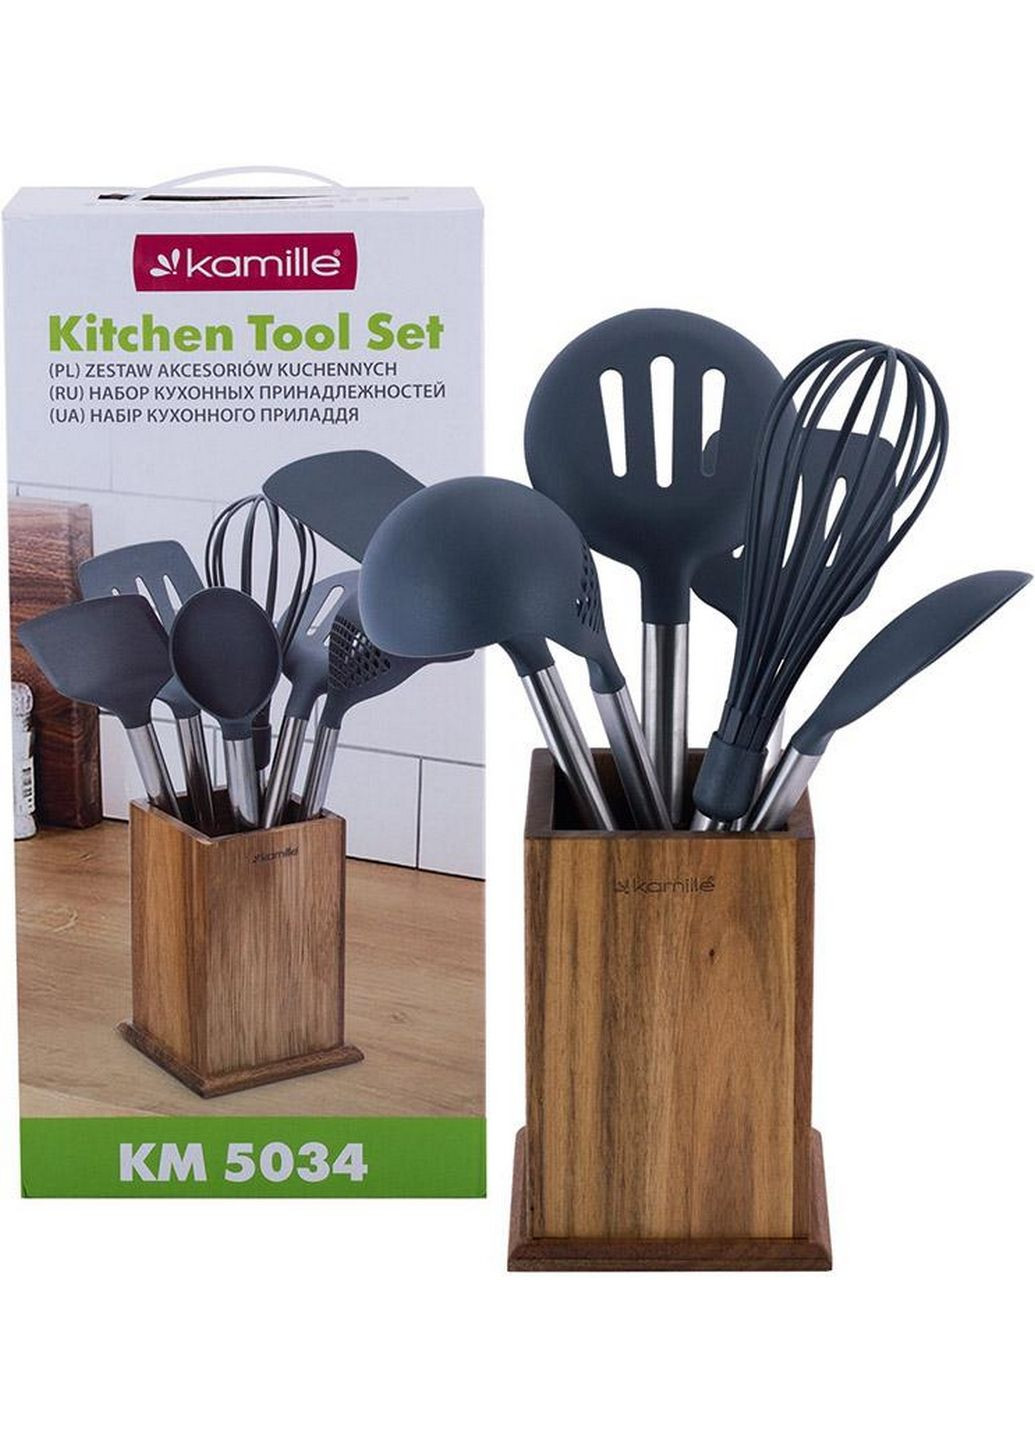 Набор кухонных принадлежностей oryen brown 6 аксессуаров на деревянной подставке Kamille (282591112)